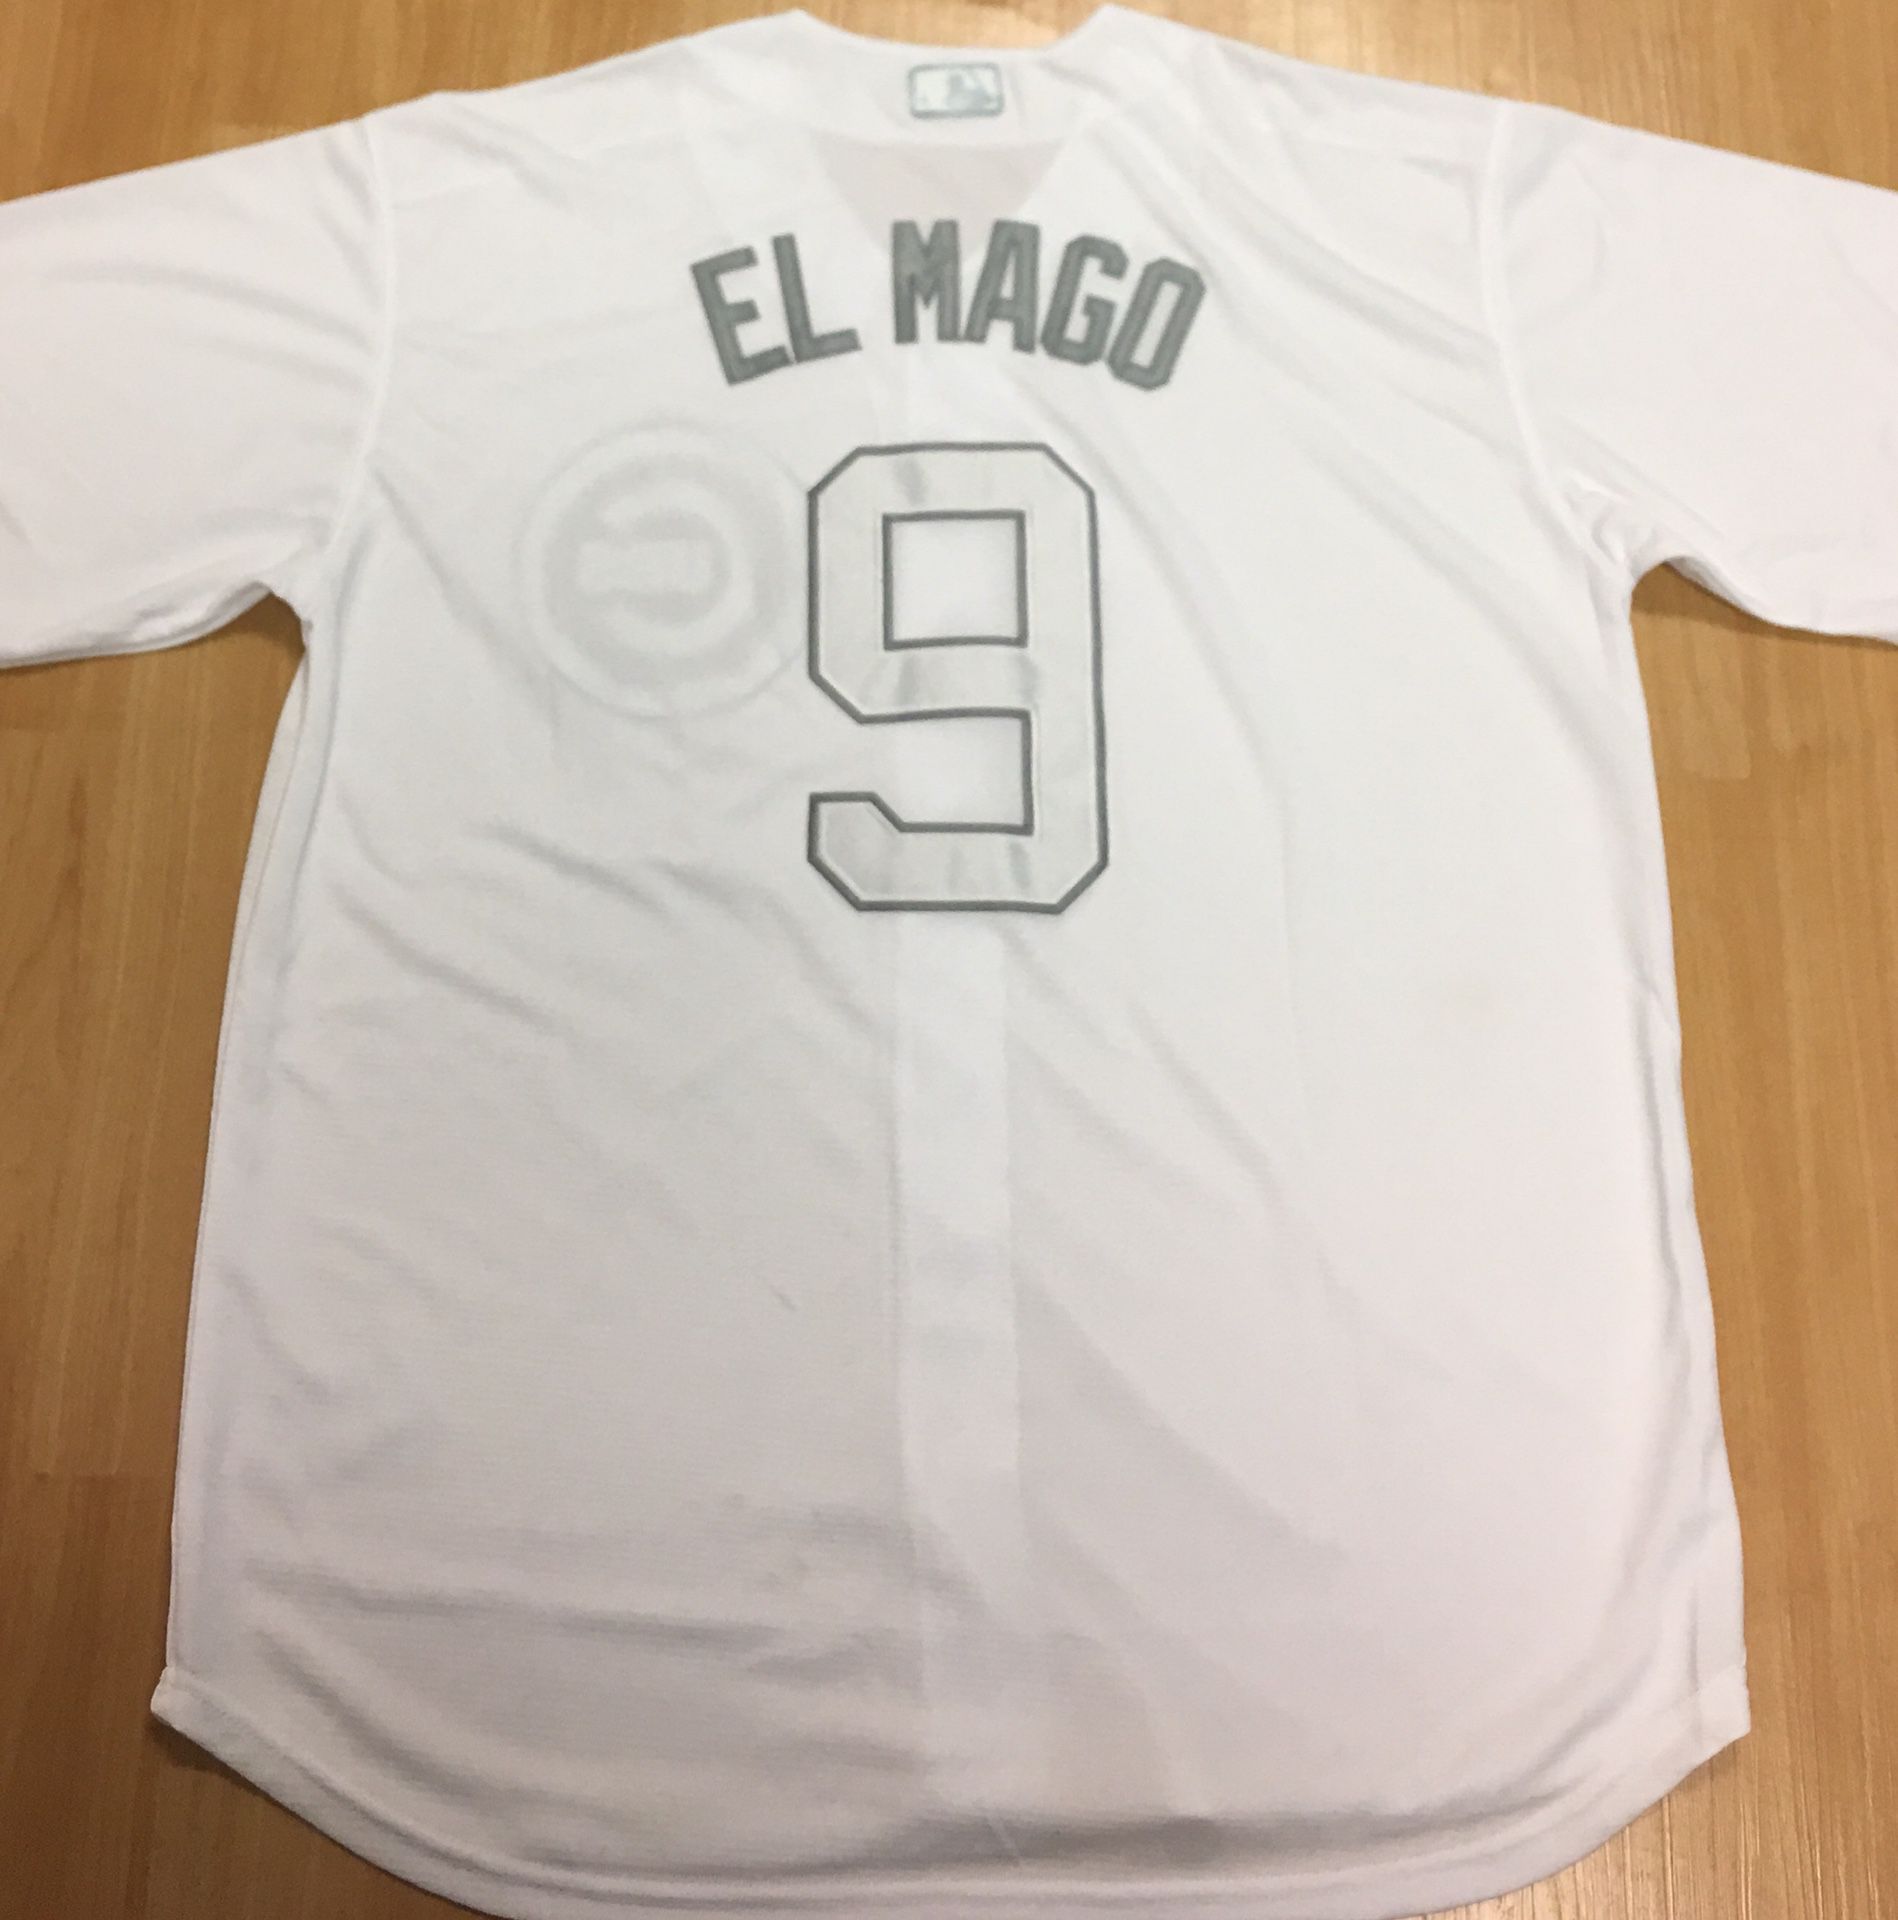 El MagoBaez Cubs baseball jersey brand new large $35